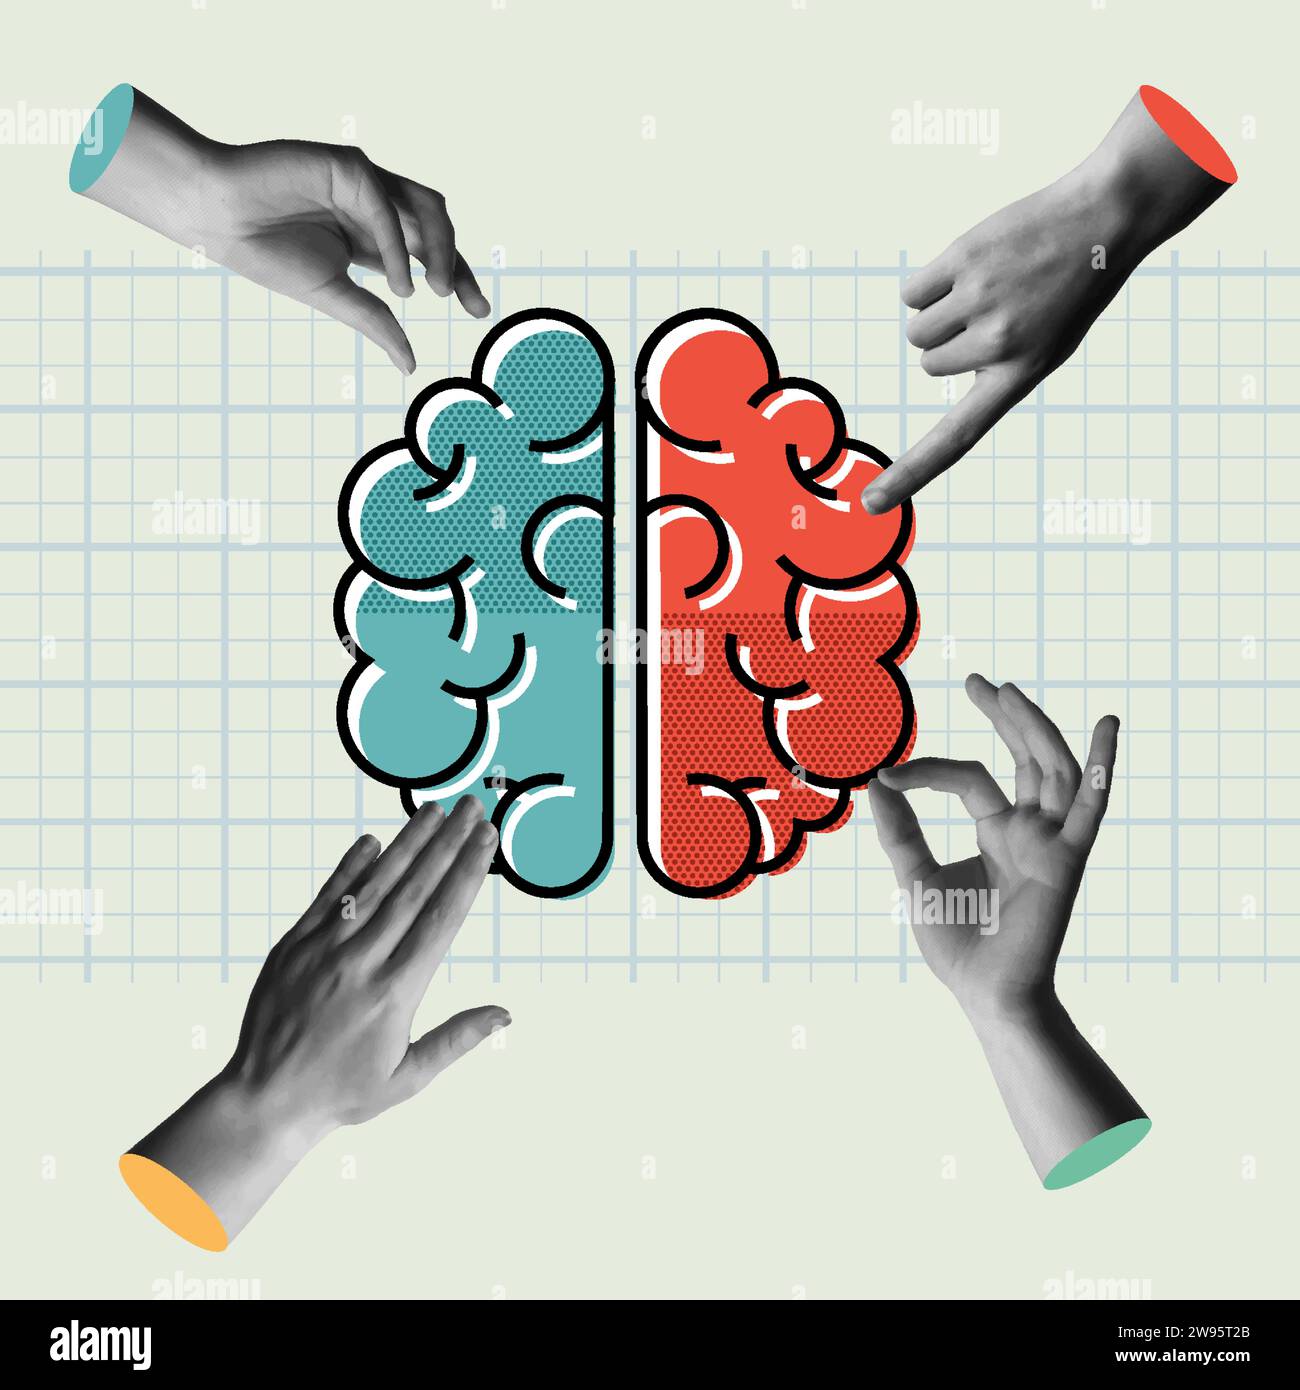 Illustrazione concettuale di emisferi cerebrali umani e gruppo di hads in collage retrò illustrazione vettoriale stile anni '90. Concetto di intelli creativi e logici Illustrazione Vettoriale